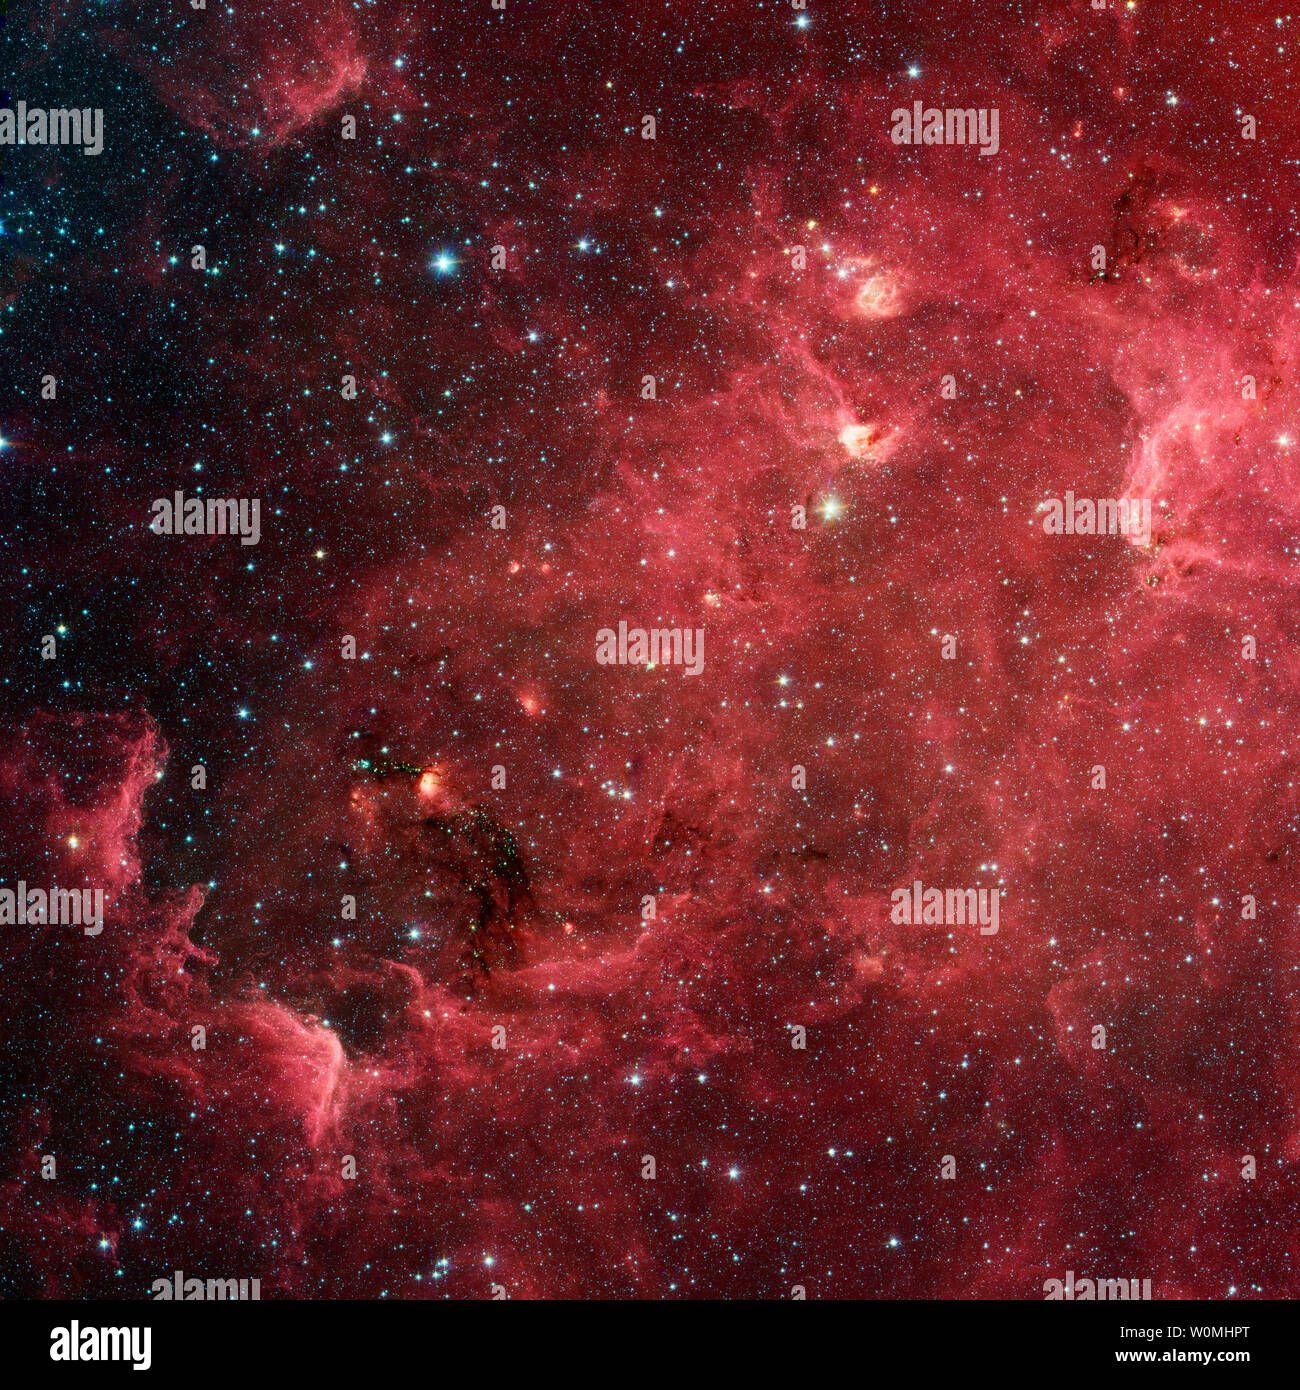 Questo paesaggio di vorticazione di stelle è noto come il Nord America nebulosa. In luce visibile, la regione assomiglia a America del Nord, ma in questa nuova vista a raggi infrarossi dalla NASA il telescopio spaziale Spitzer, continente scompare. UPI/NASA/JPL-Caltech Foto Stock